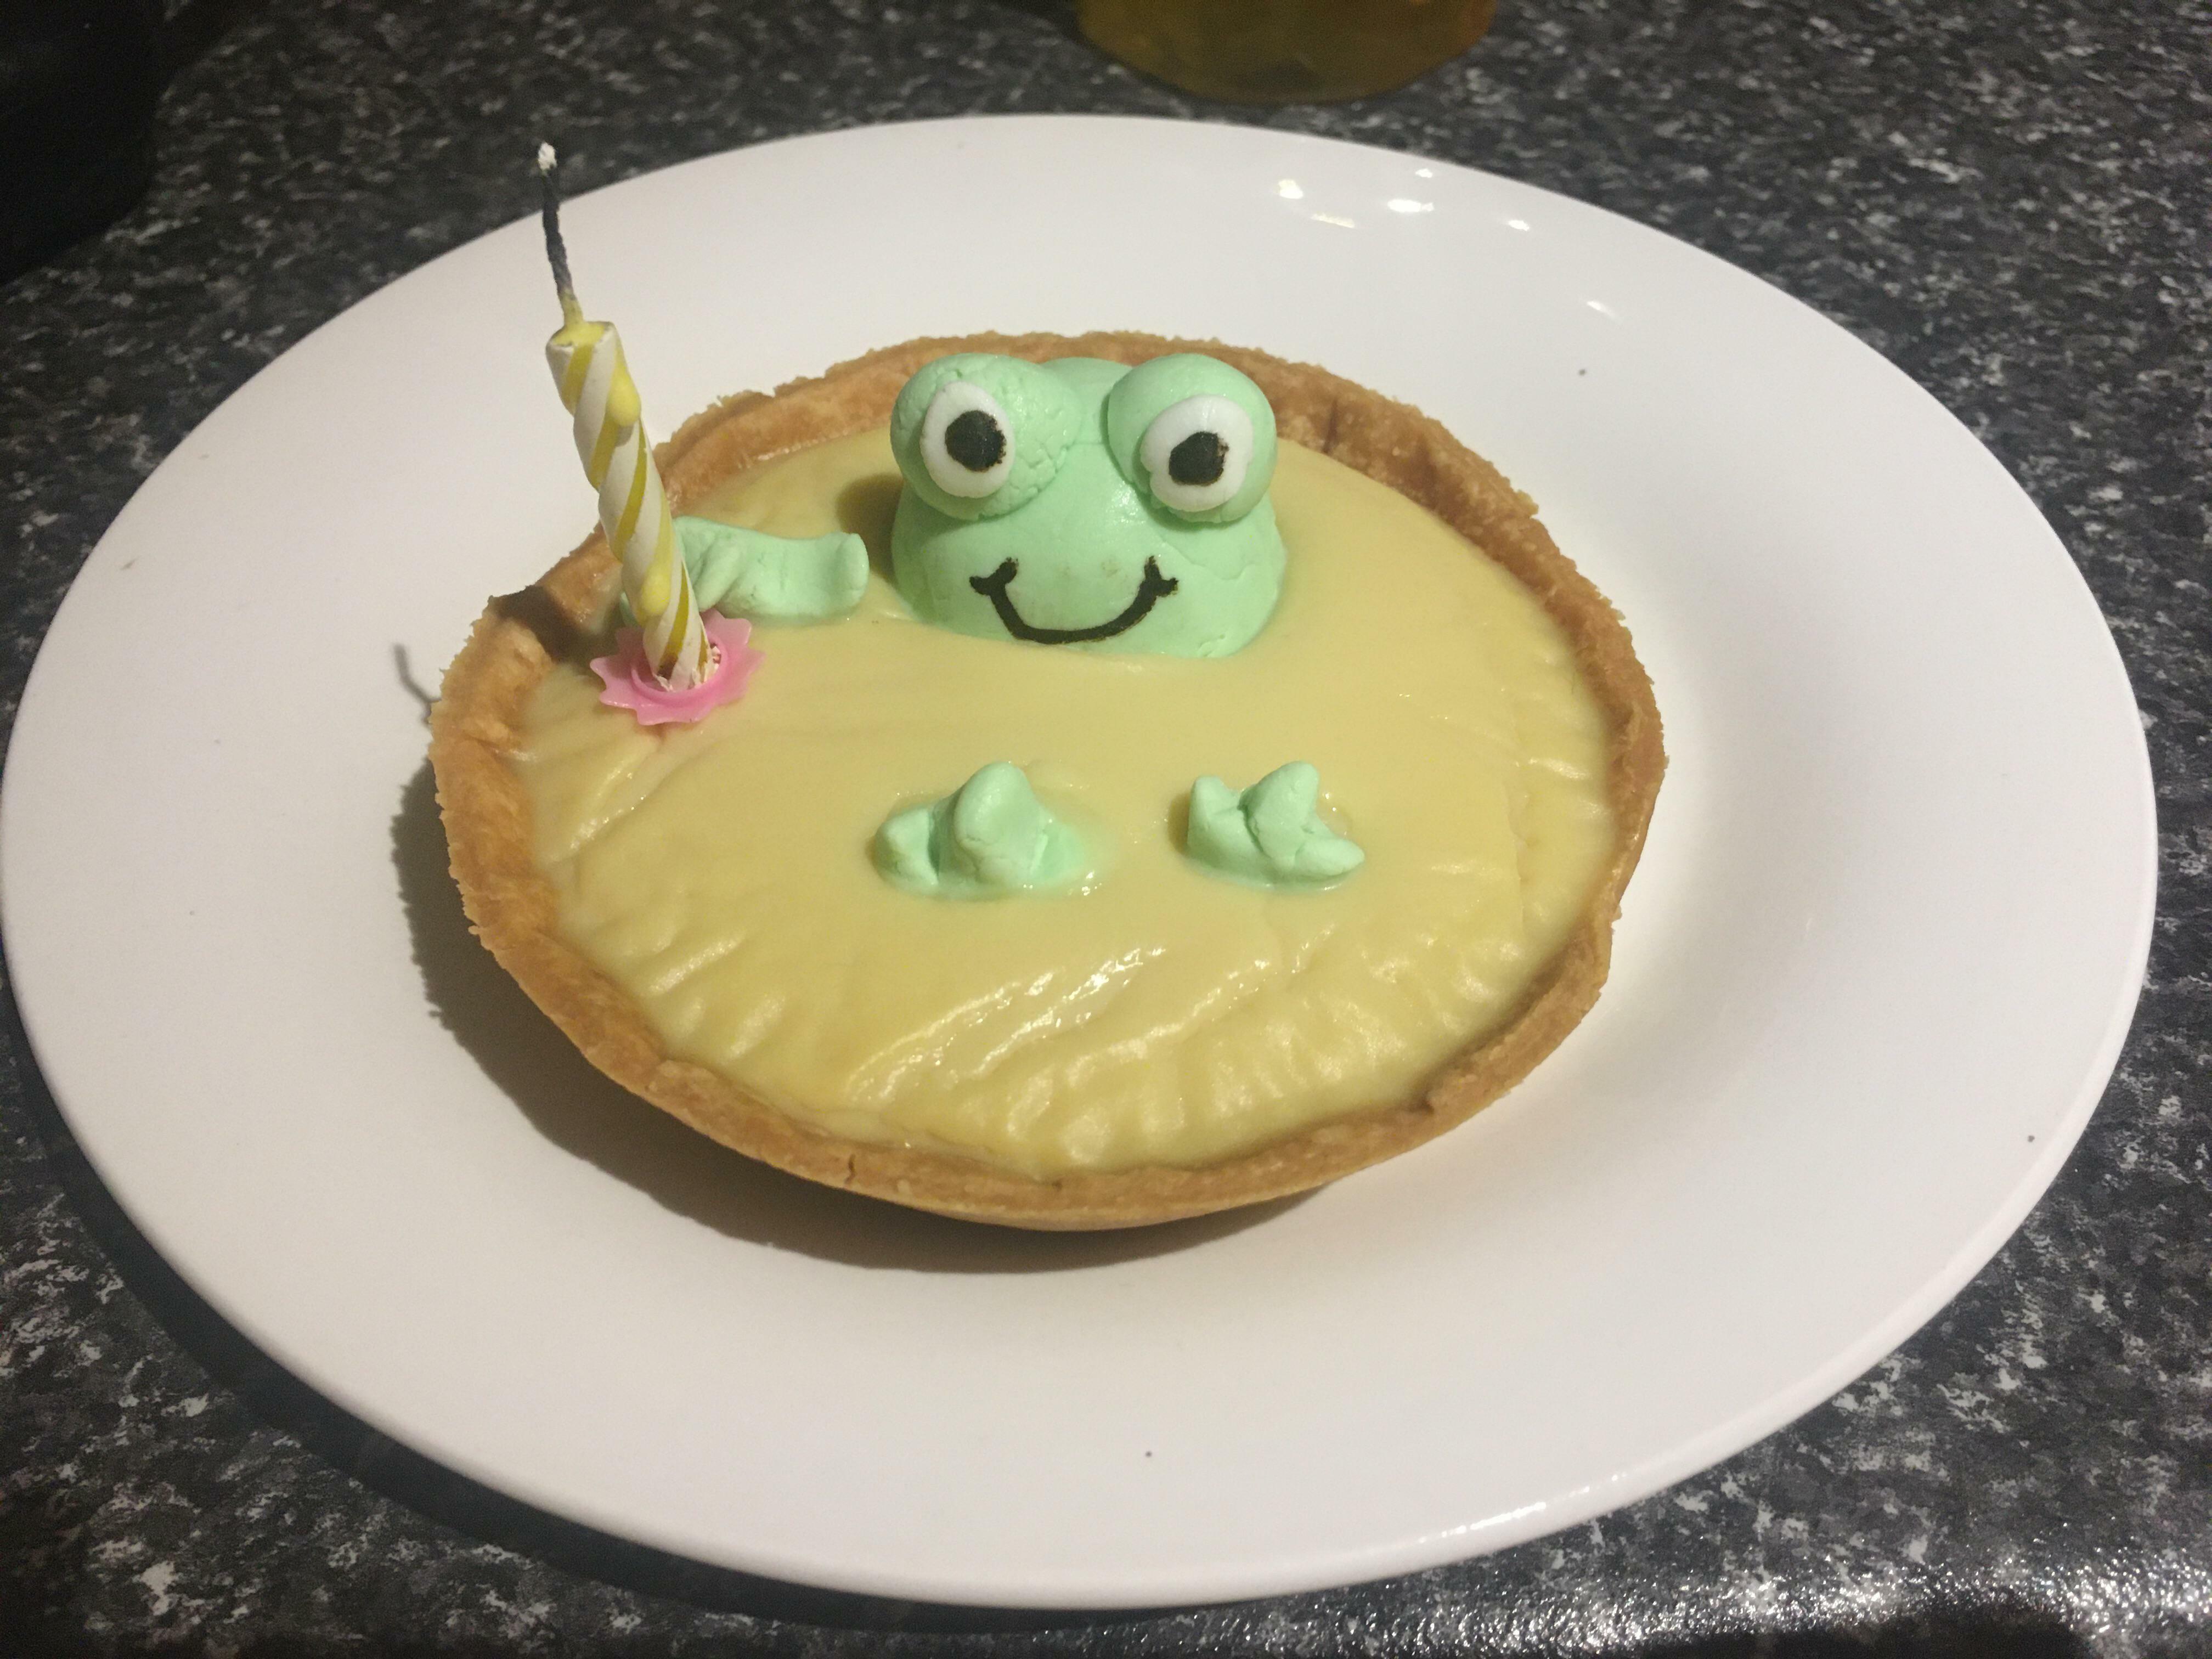 tarte à la crème pâtissière à la grenouille que mon mari m'a préparée pour mon anniversaire